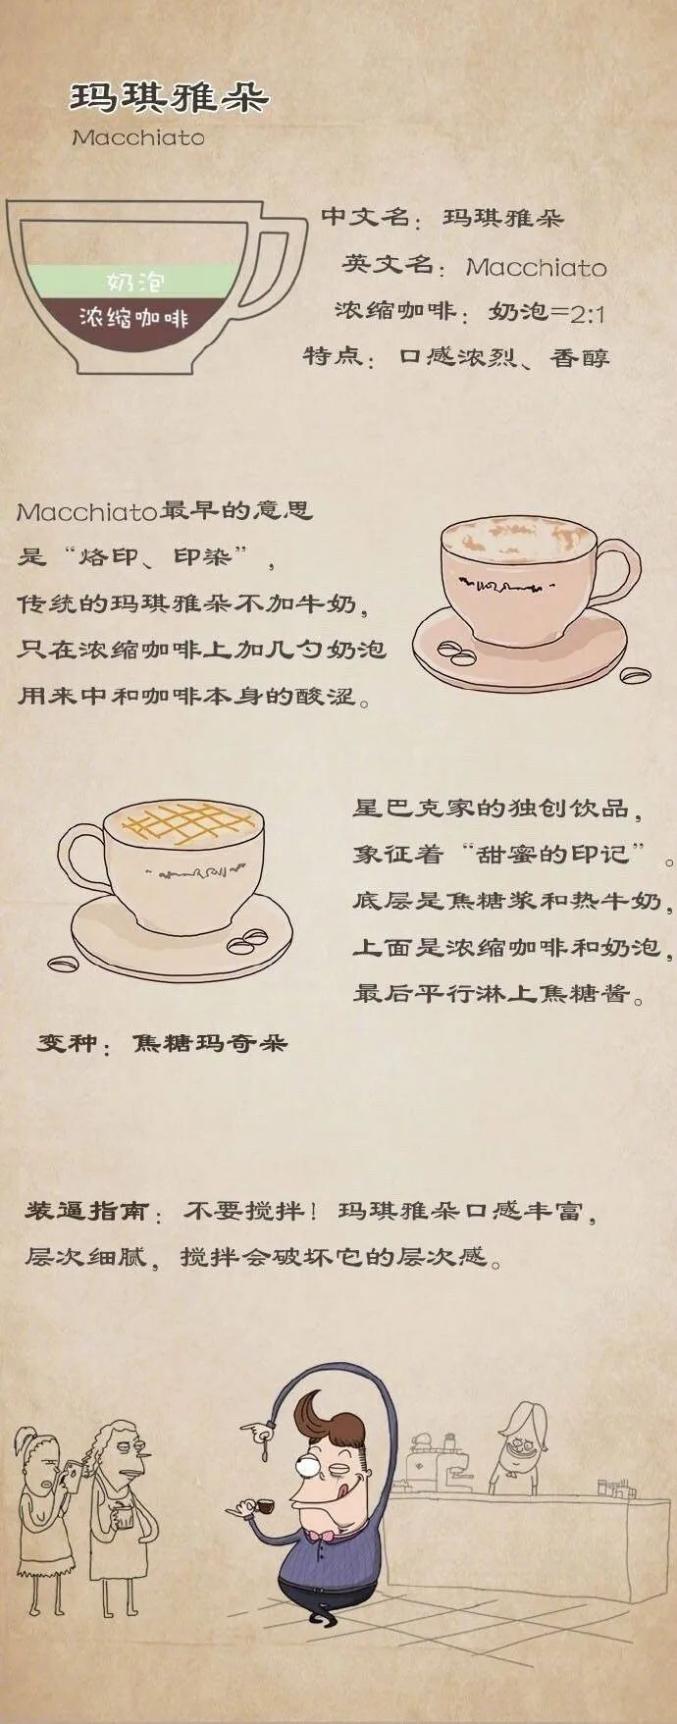 上海哪里的咖啡馆好多家_上海咖啡门店_上海多少家咖啡馆